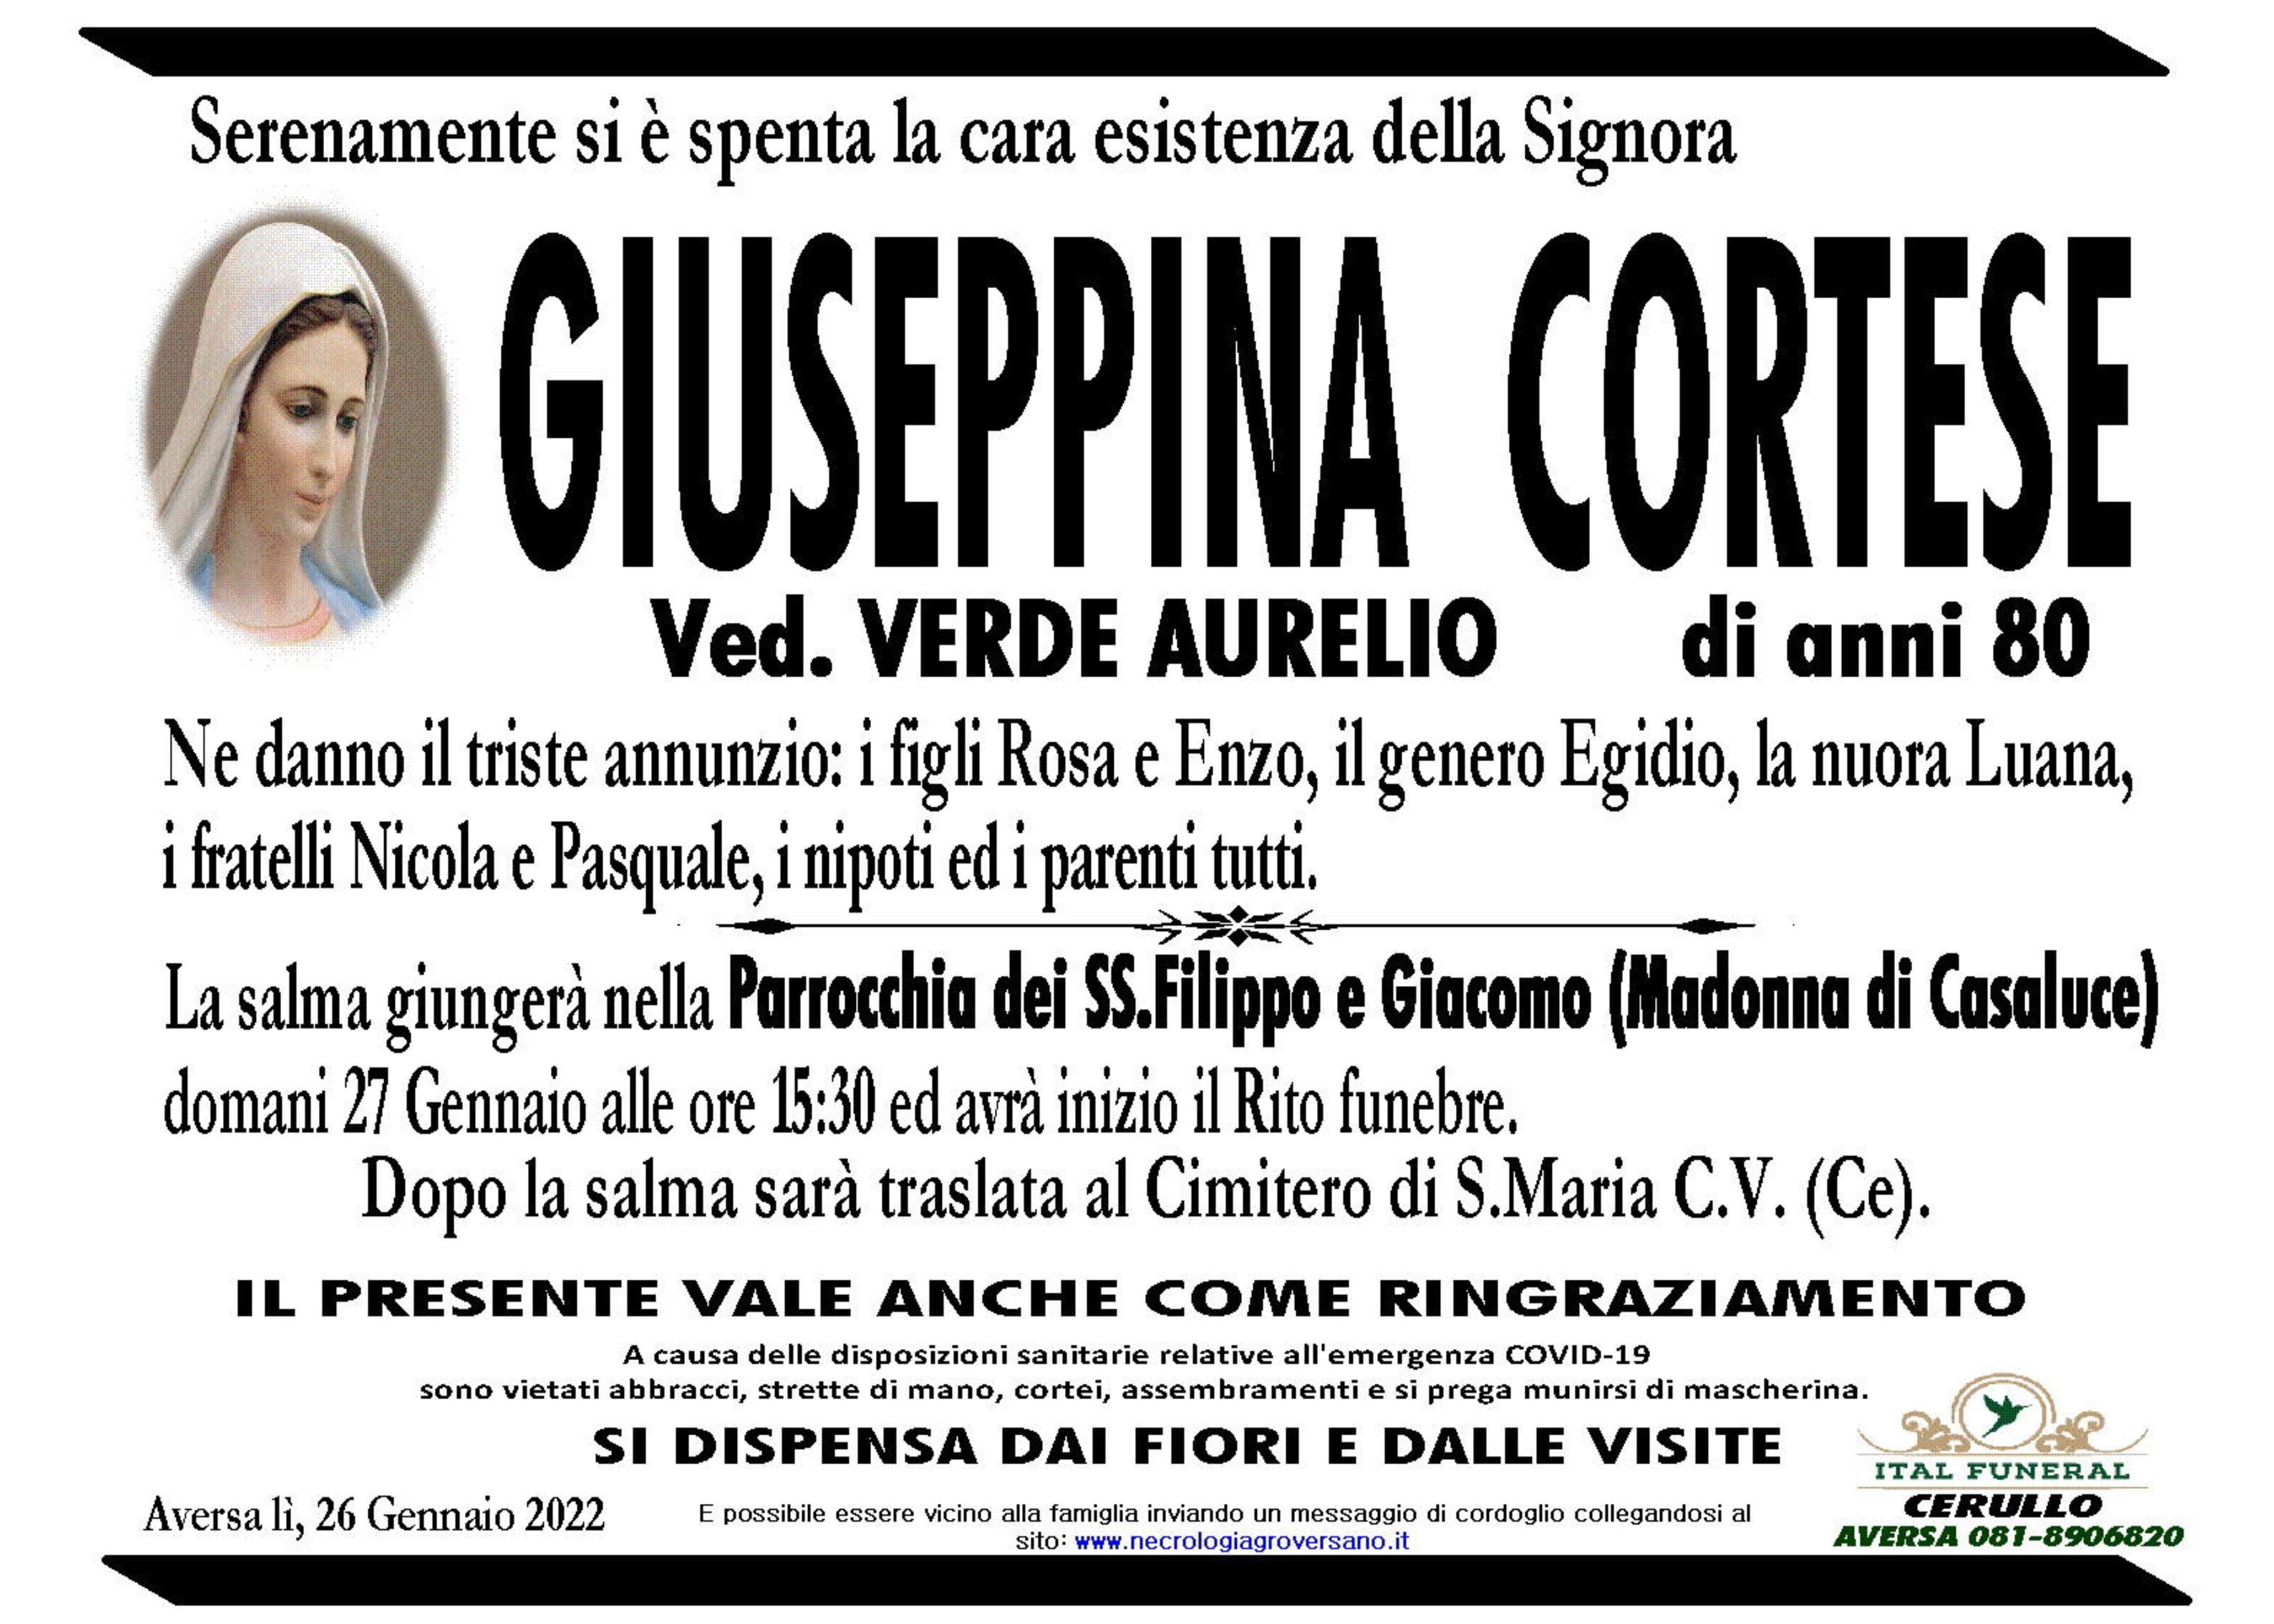 Giuseppina Cortese